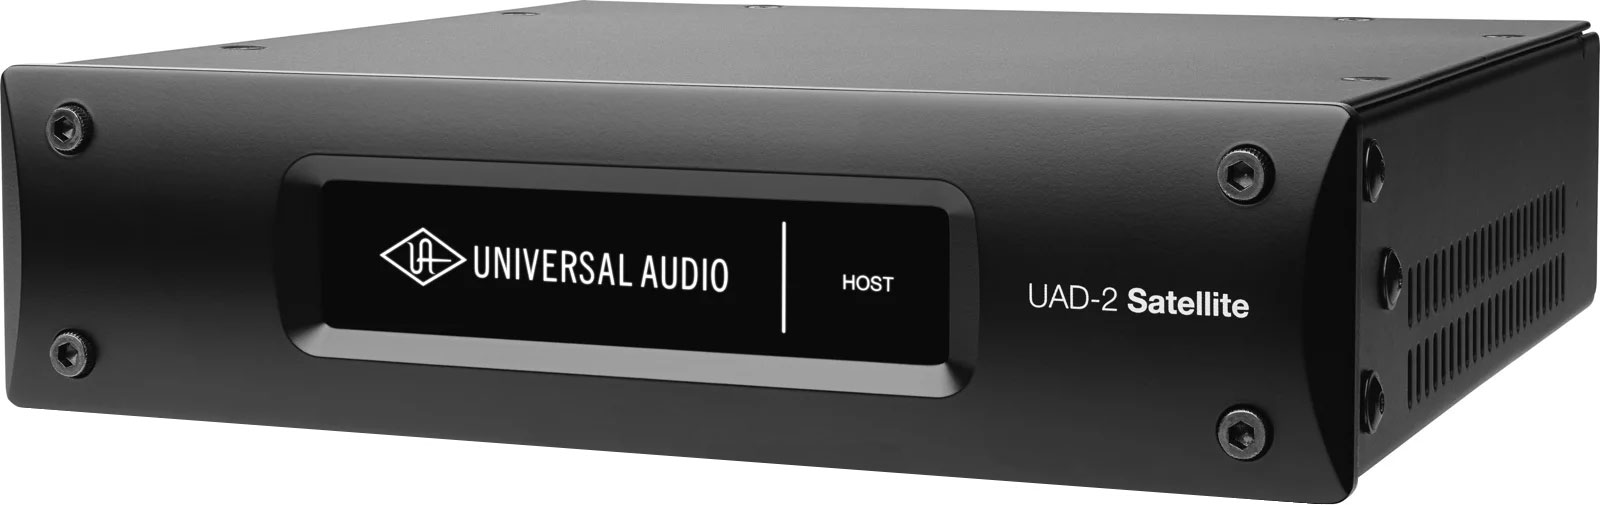 UNIVERSAL AUDIO UAD-2 SATELLITE QUAD USB